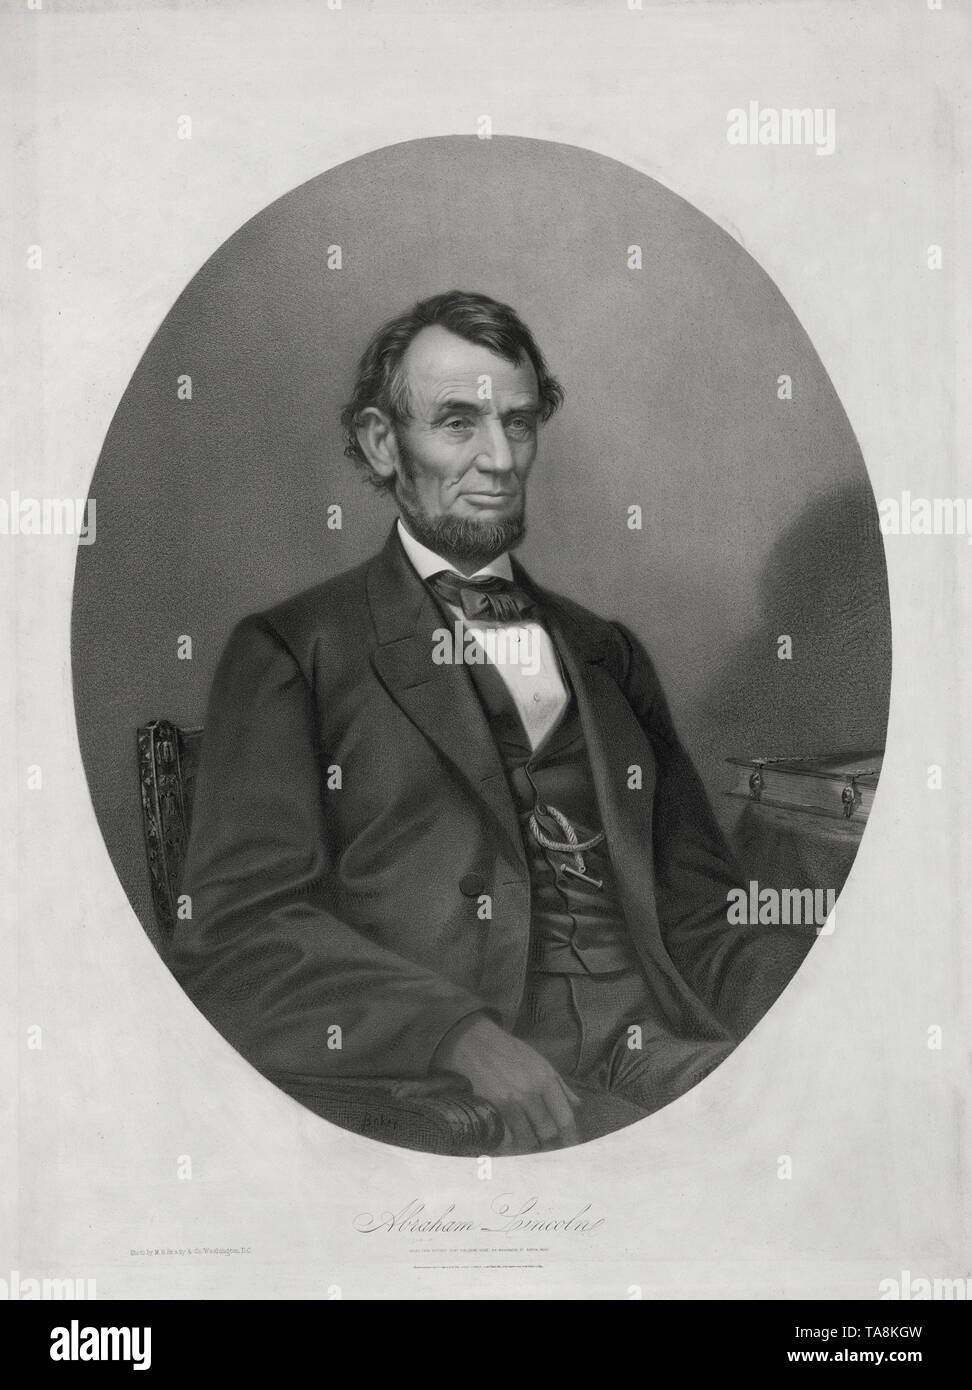 Mi assis Portrait d'Abraham Lincoln, lithographie de Joseph E. Baker à partir d'une photographie par M.B. Brady & Co., imprimé et publié par la maison d'édition d'impression Bufford, Boston, Massachusetts, 1865 Banque D'Images